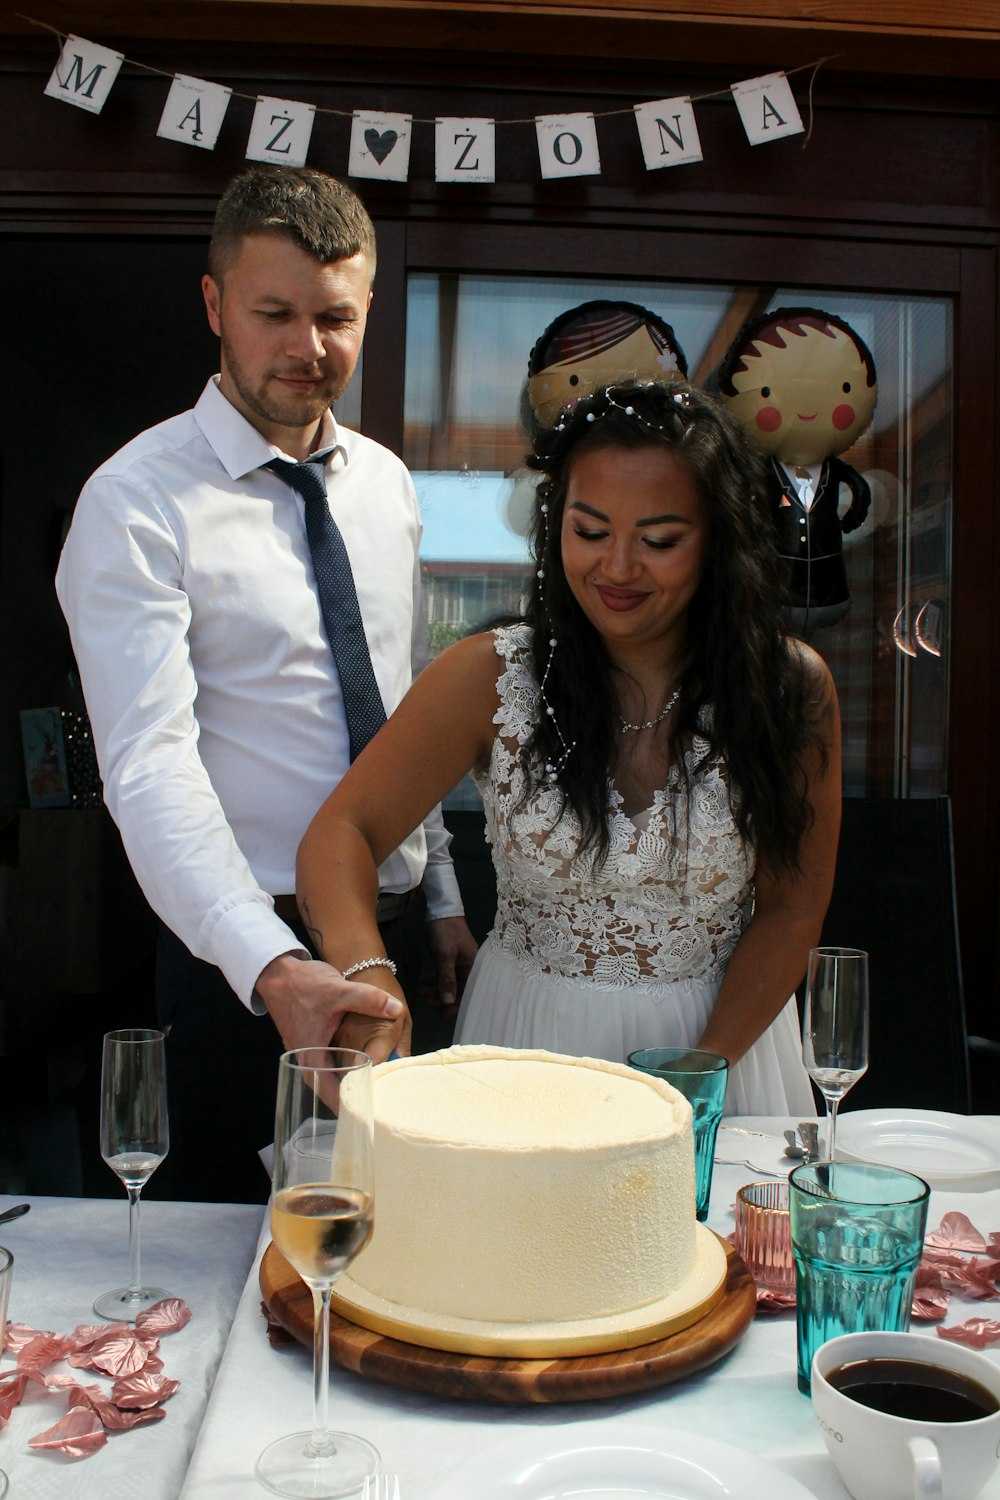 Ein Mann und eine Frau, die zusammen einen Kuchen schneiden